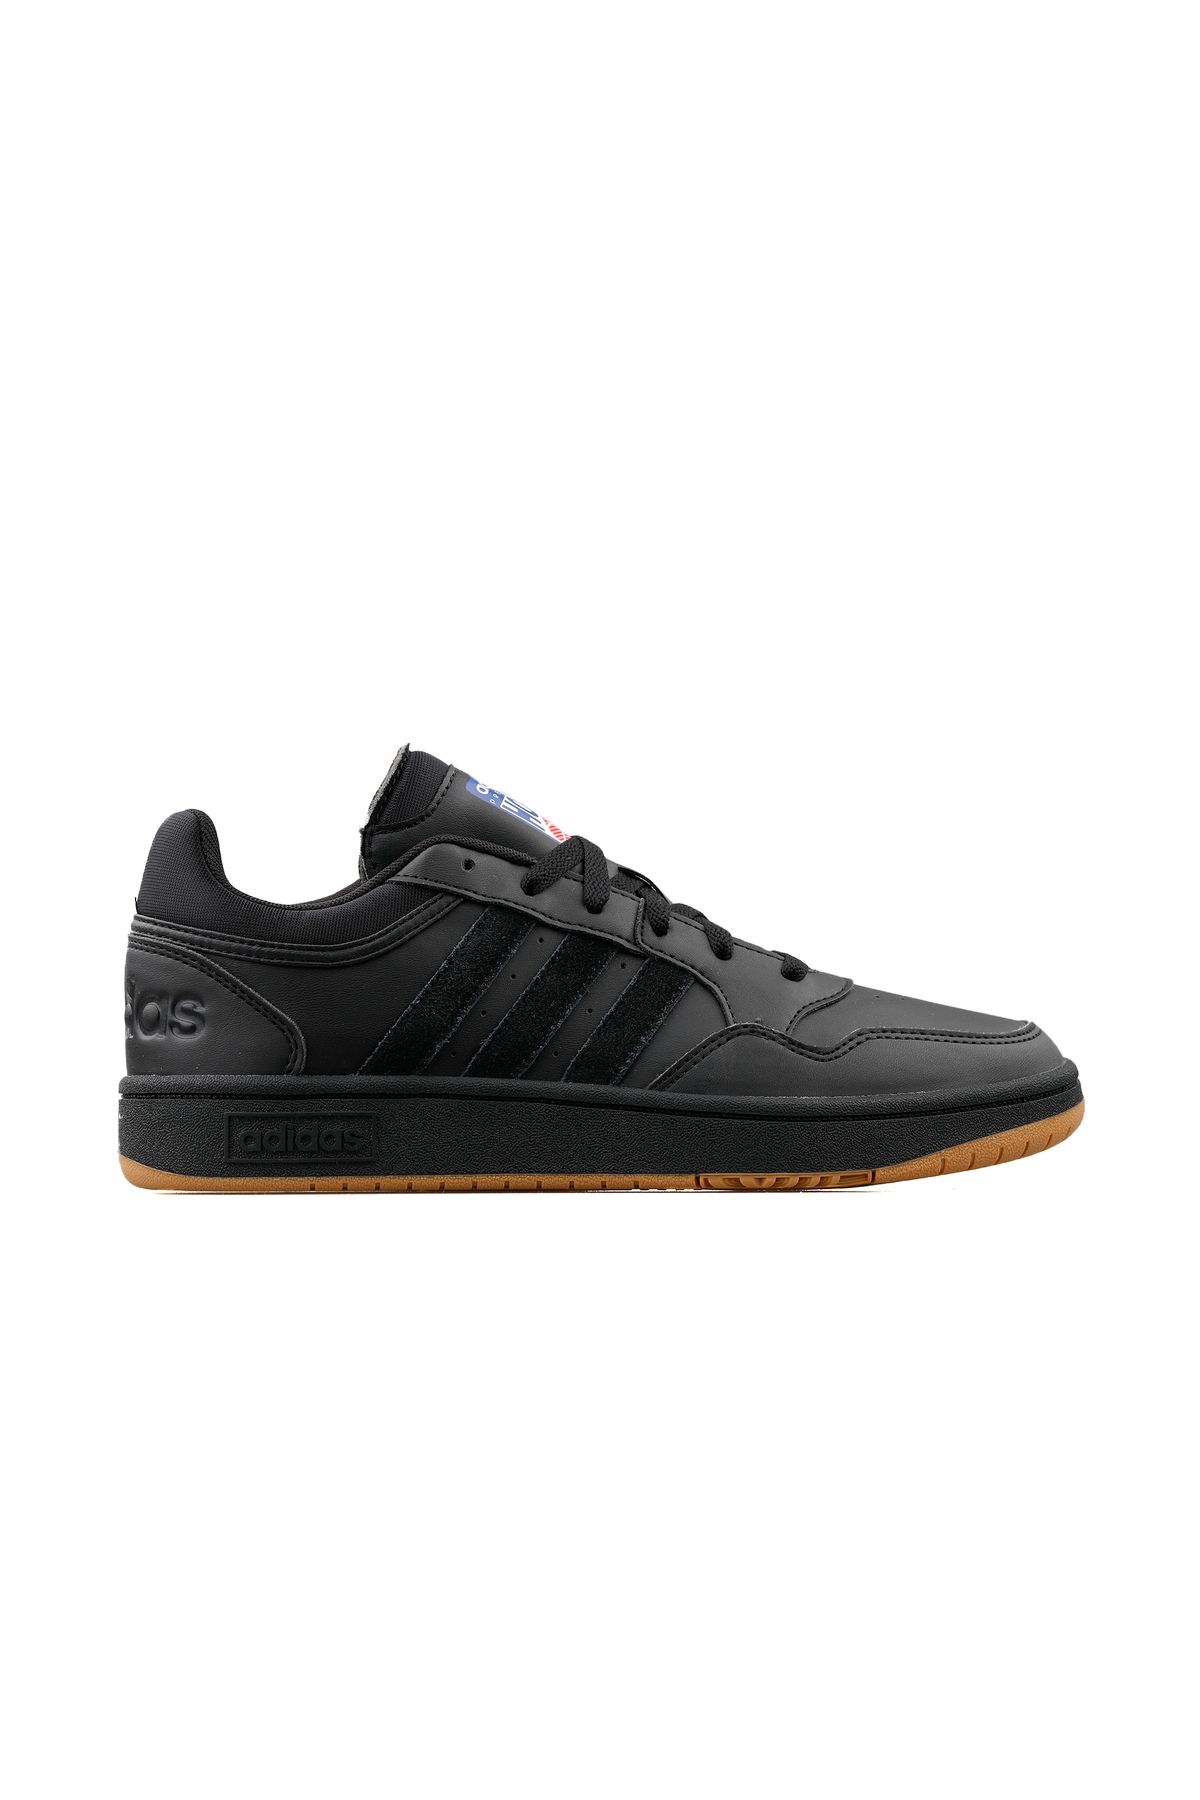 adidas Hoops 3.0 Erkek Günlük Ayakkabı GY4727 Siyah